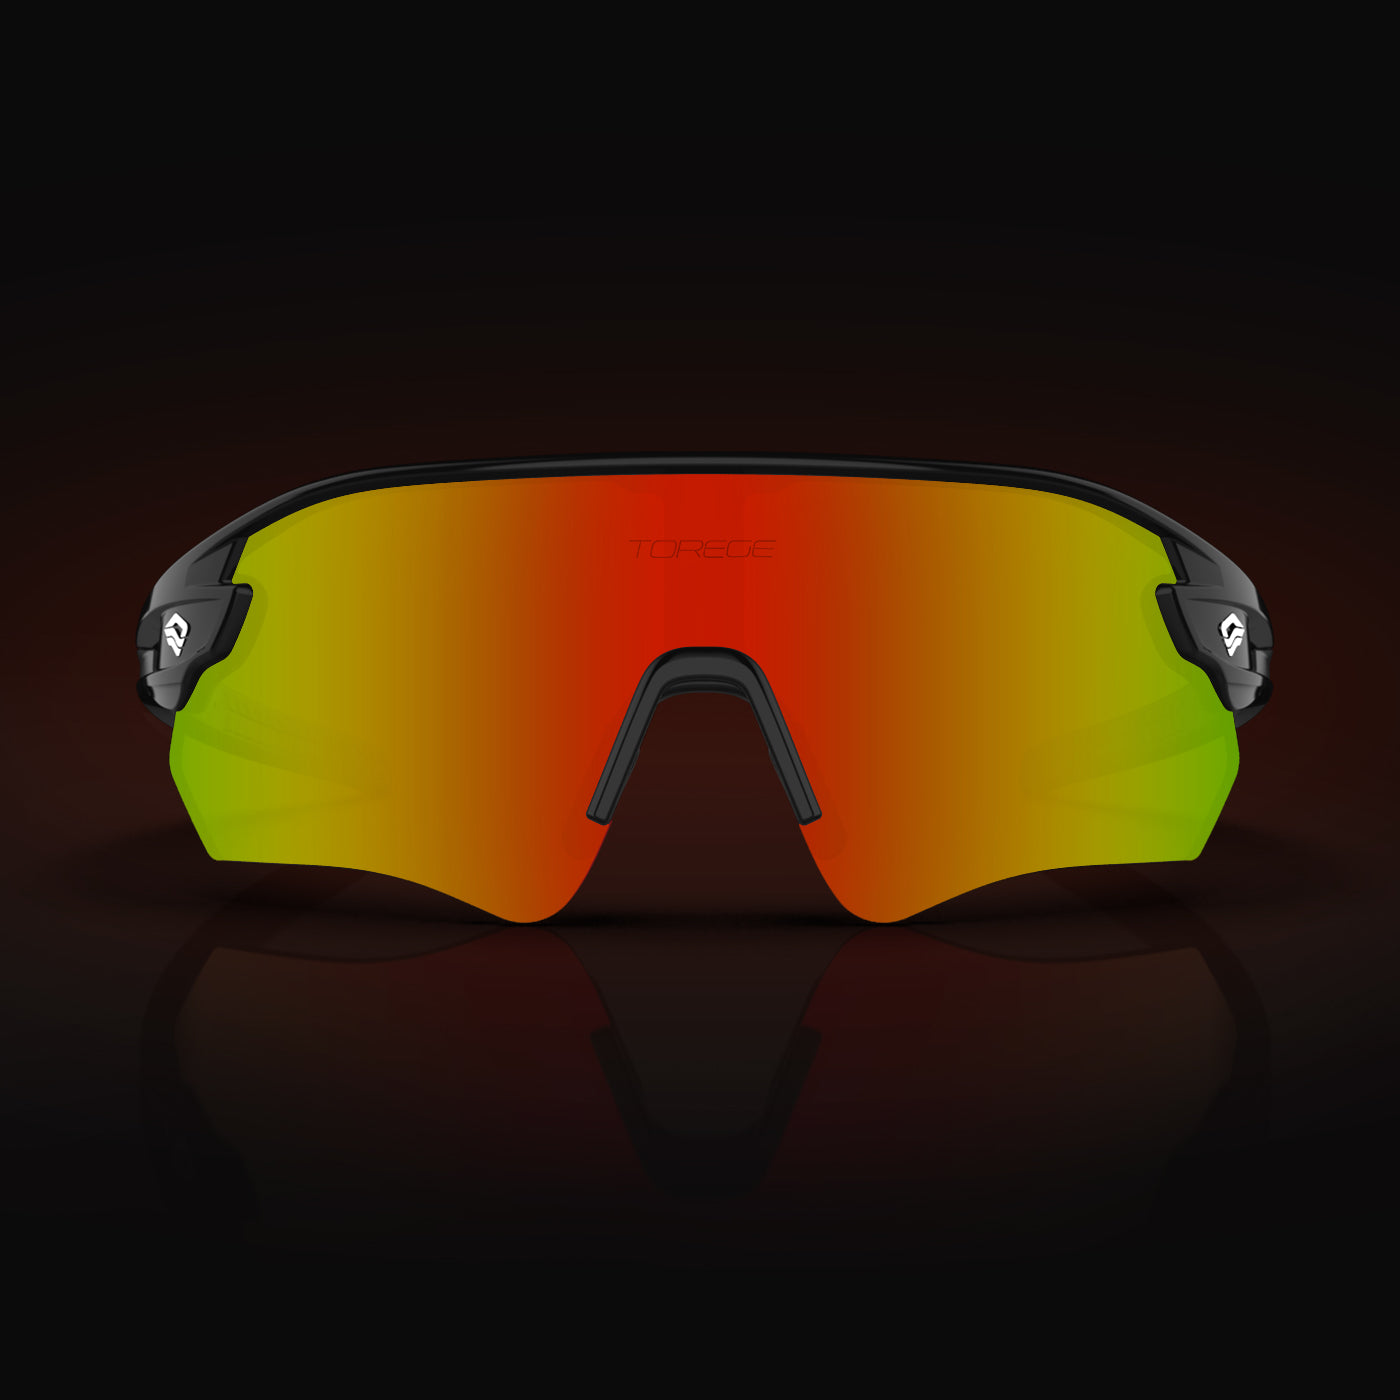 Wild Heart Ultra Lightweight Sports Sunglasses for Men & Women